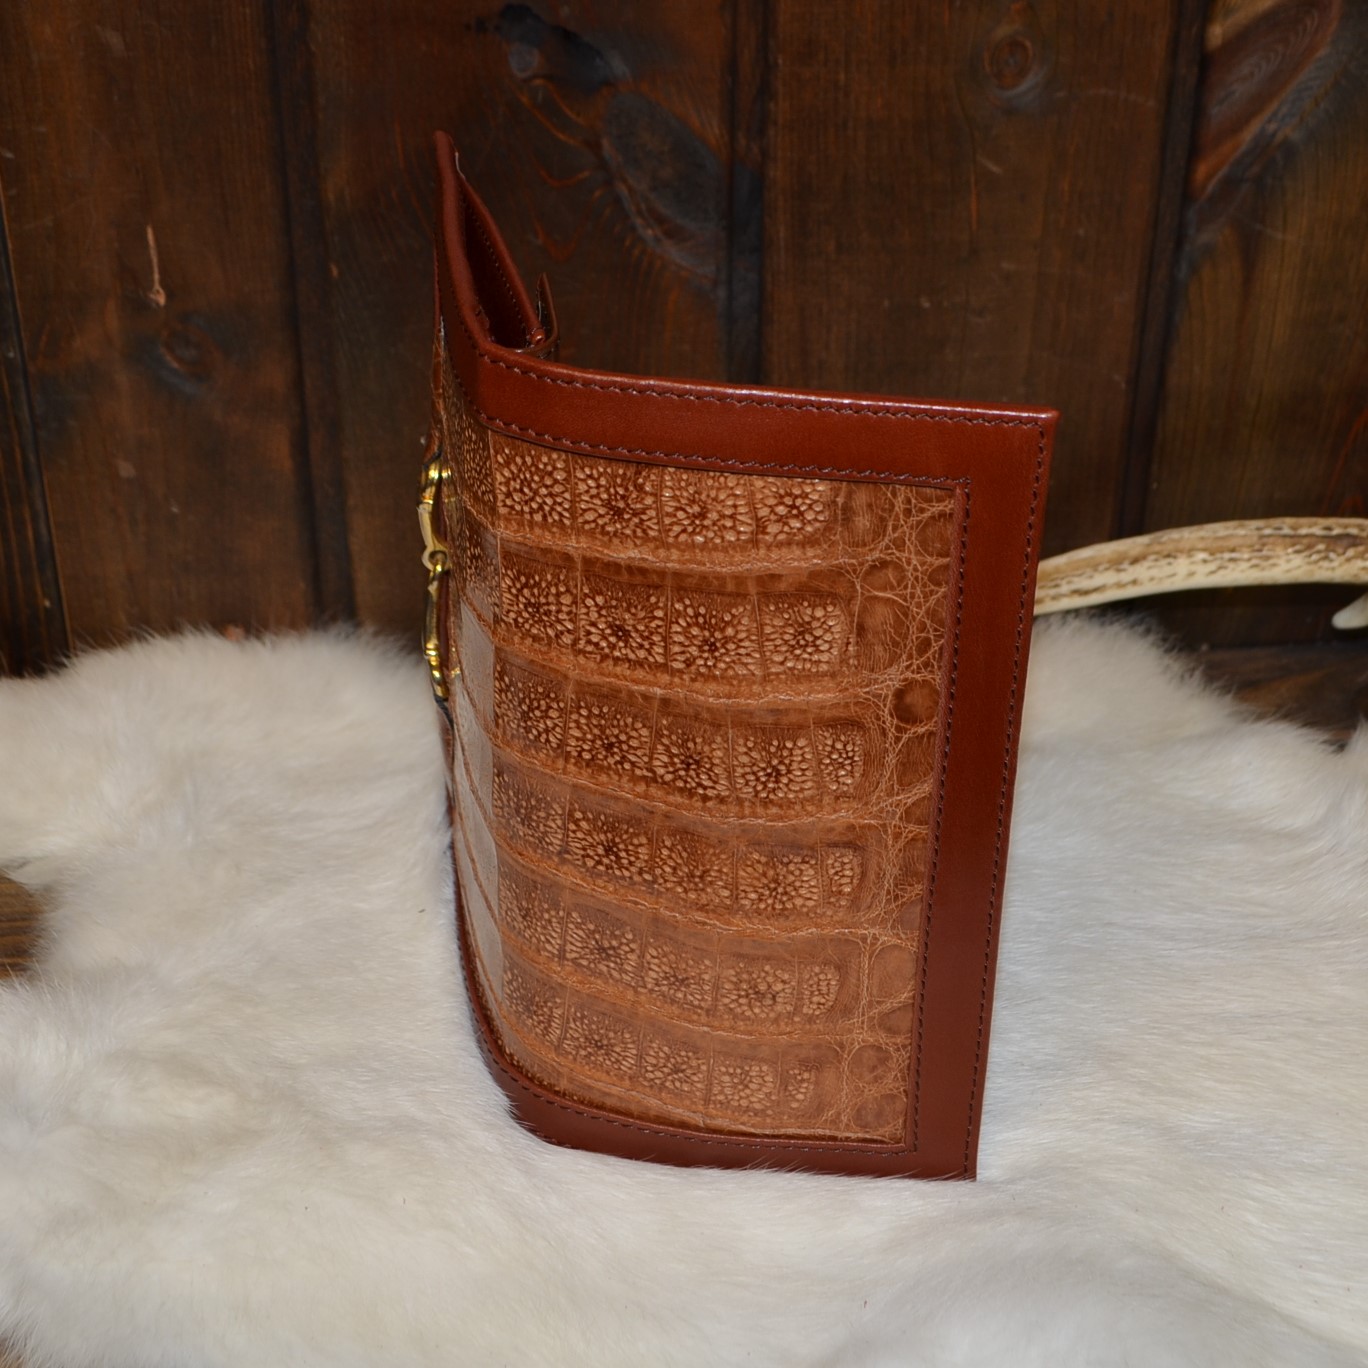 神戸の創作鞄槌井がオーダーで手作りしたワニ革の革財布